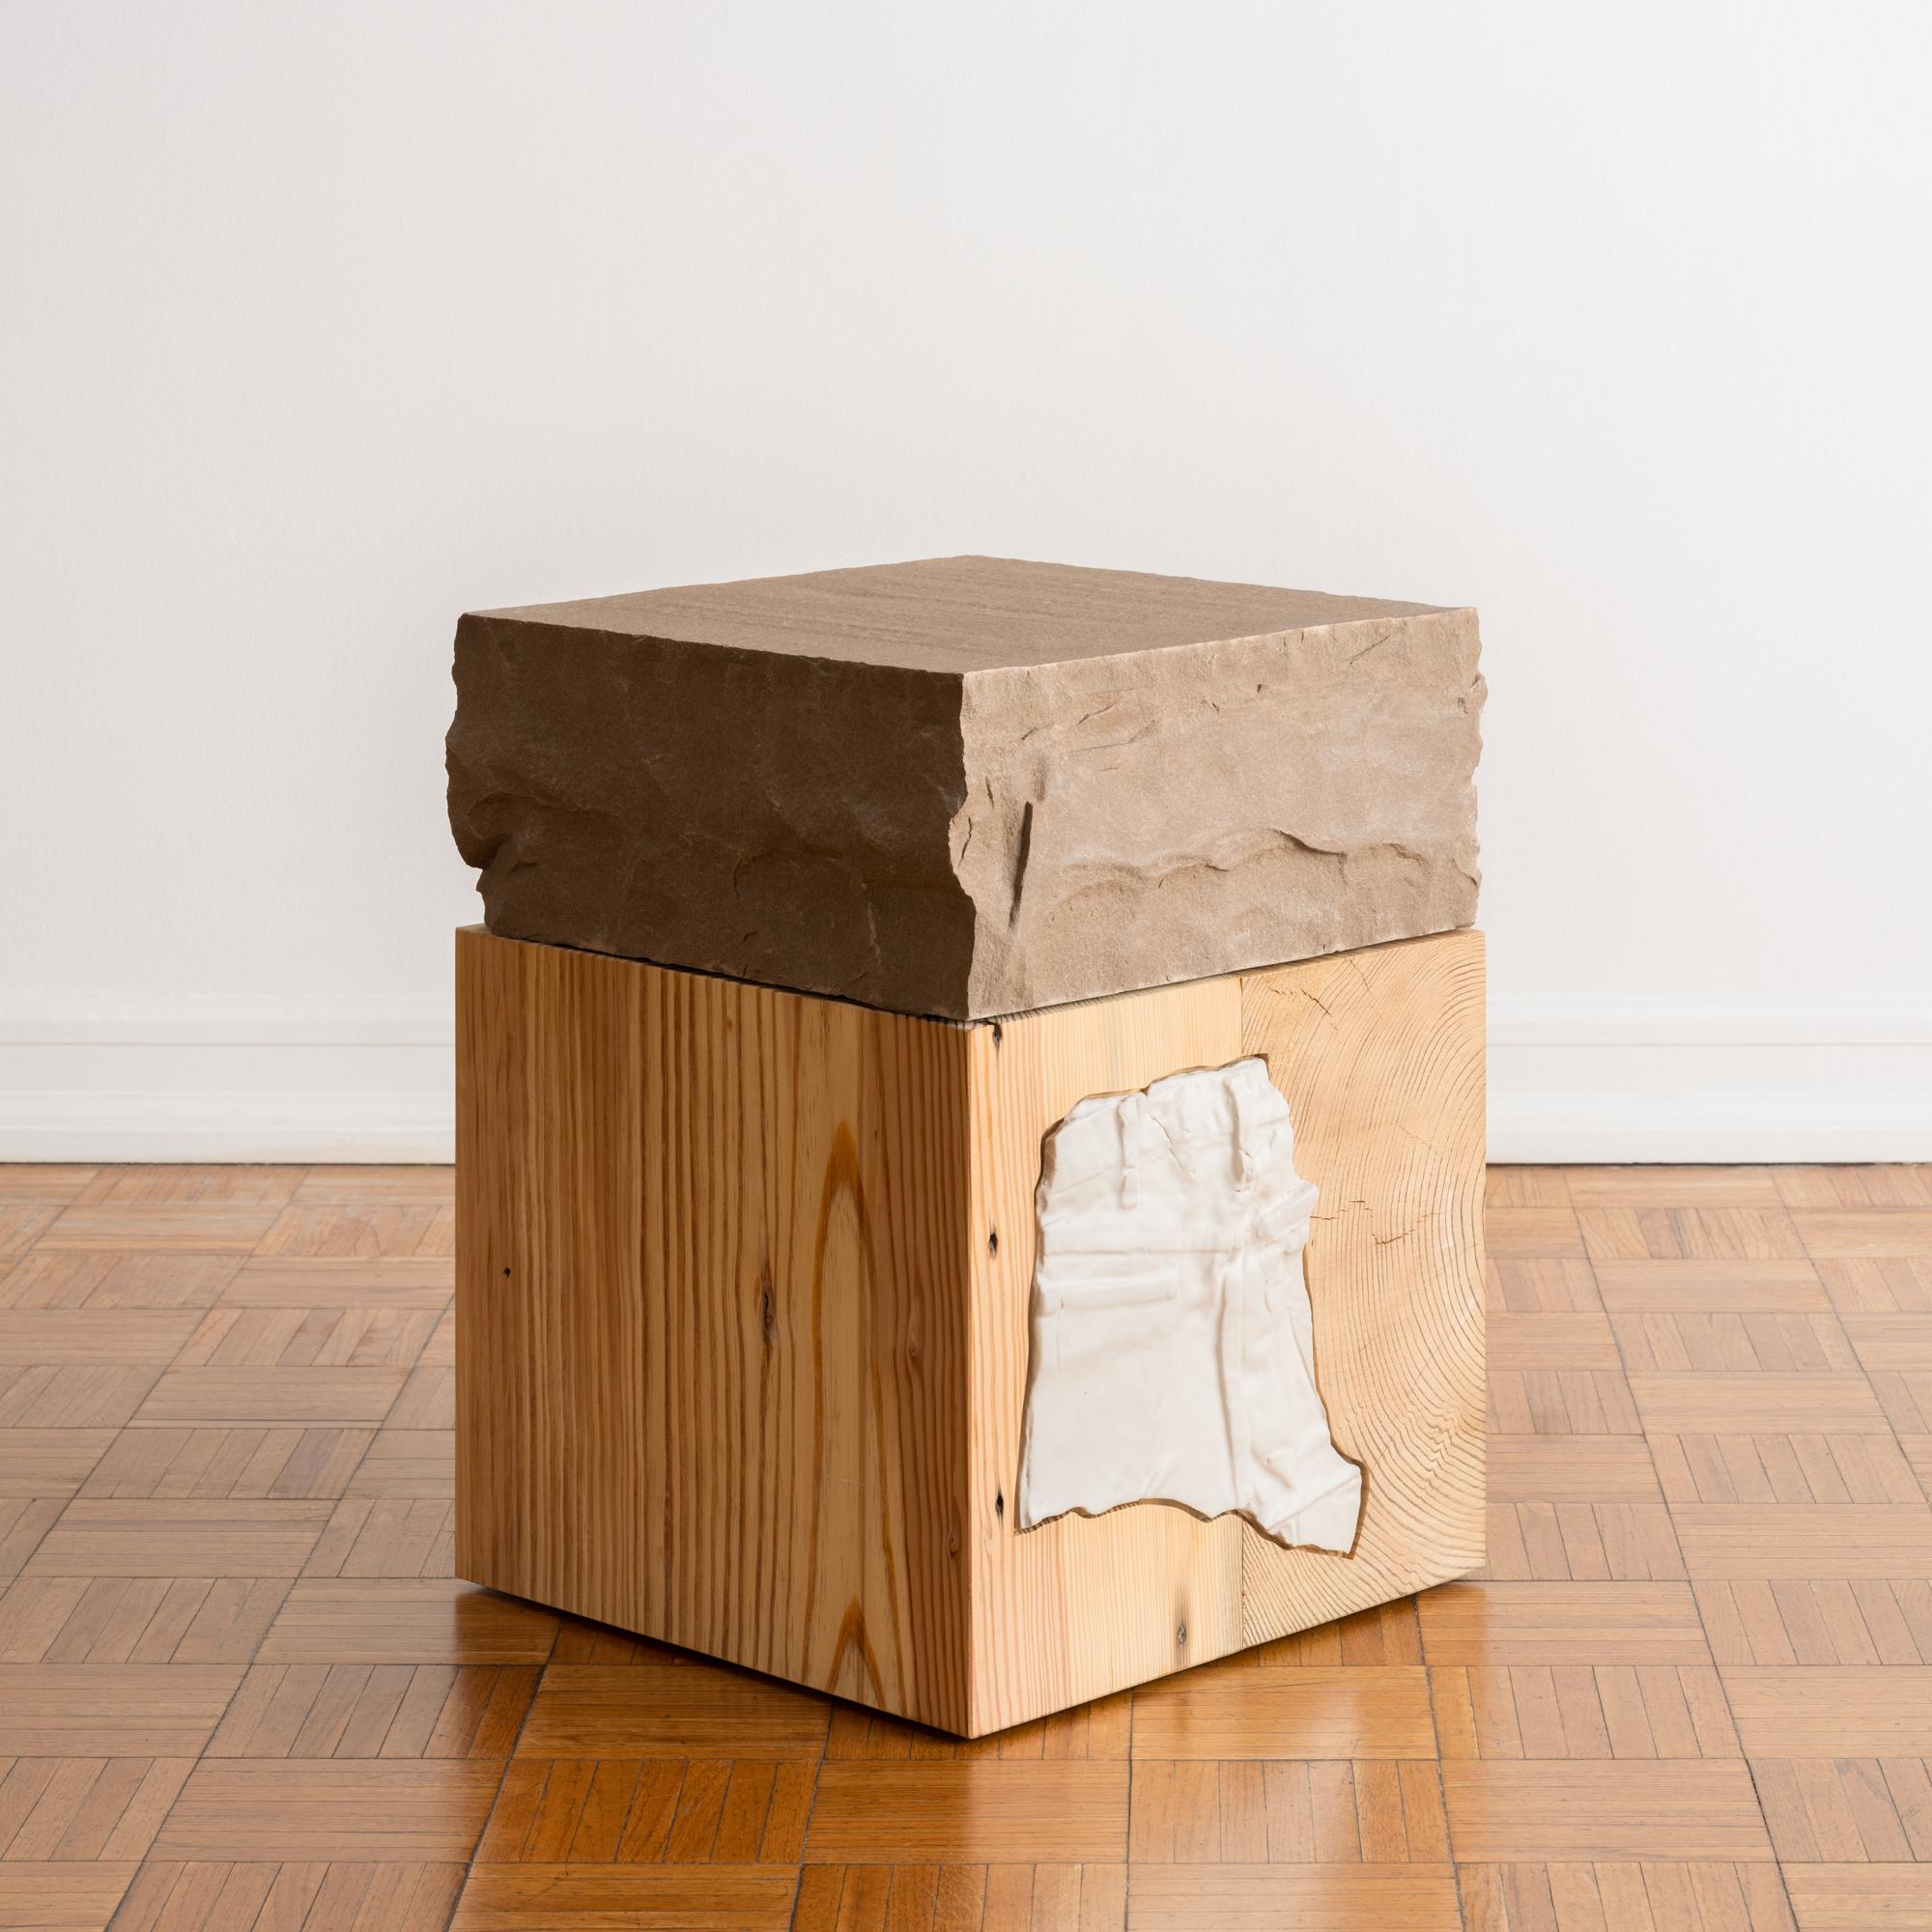 Table d'appoint ou de chevet unique en grès sculpté à la main avec une base en blocs de bois récupérés et une élégante incrustation de carreaux de céramique blanche. Cette pièce, à la fois solide et époustouflante, est l'accent sculptural discret